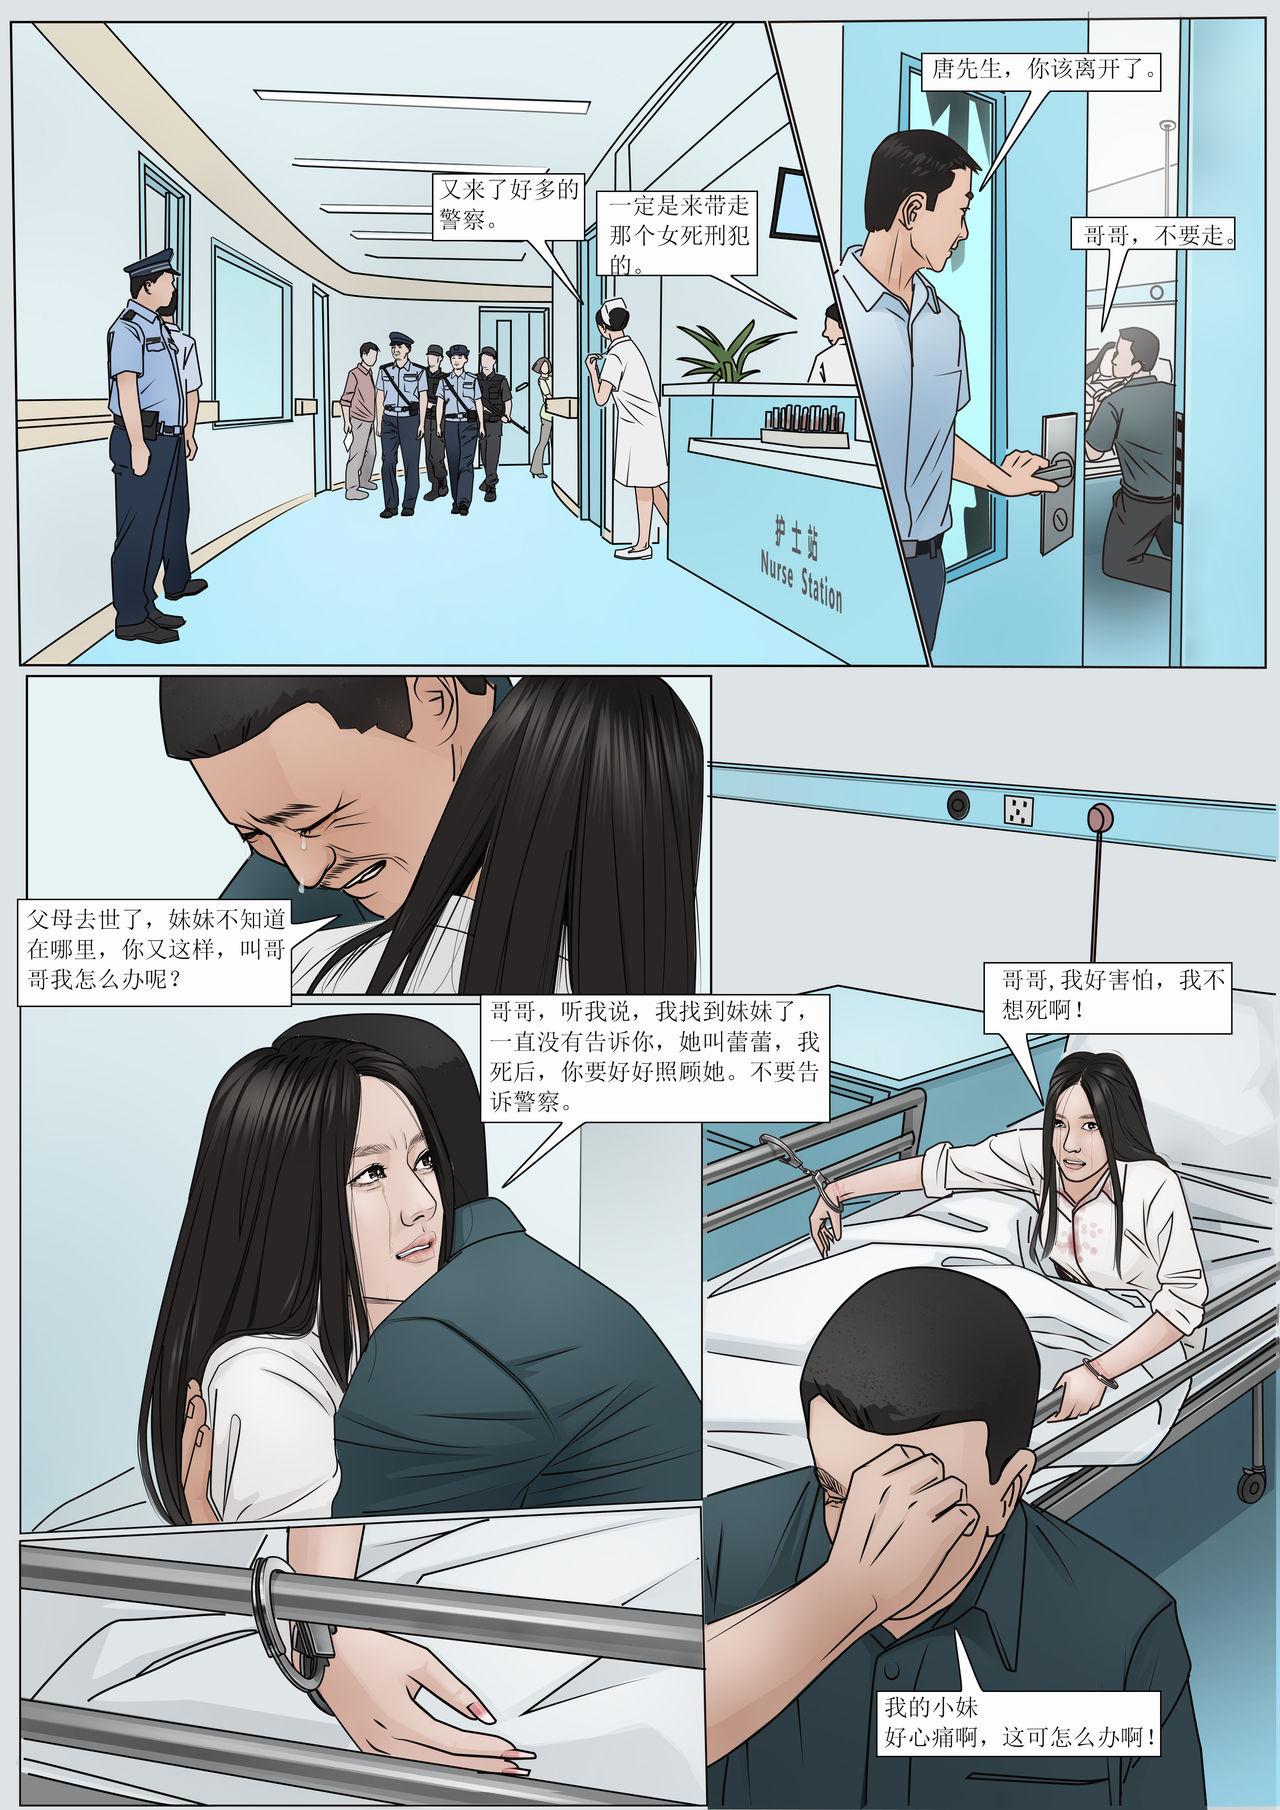 Teenage Porn 枫语漫画 Foryou 《极度重犯》第九话 Three Female Prisoners 9 Chinese Novinha - Page 11